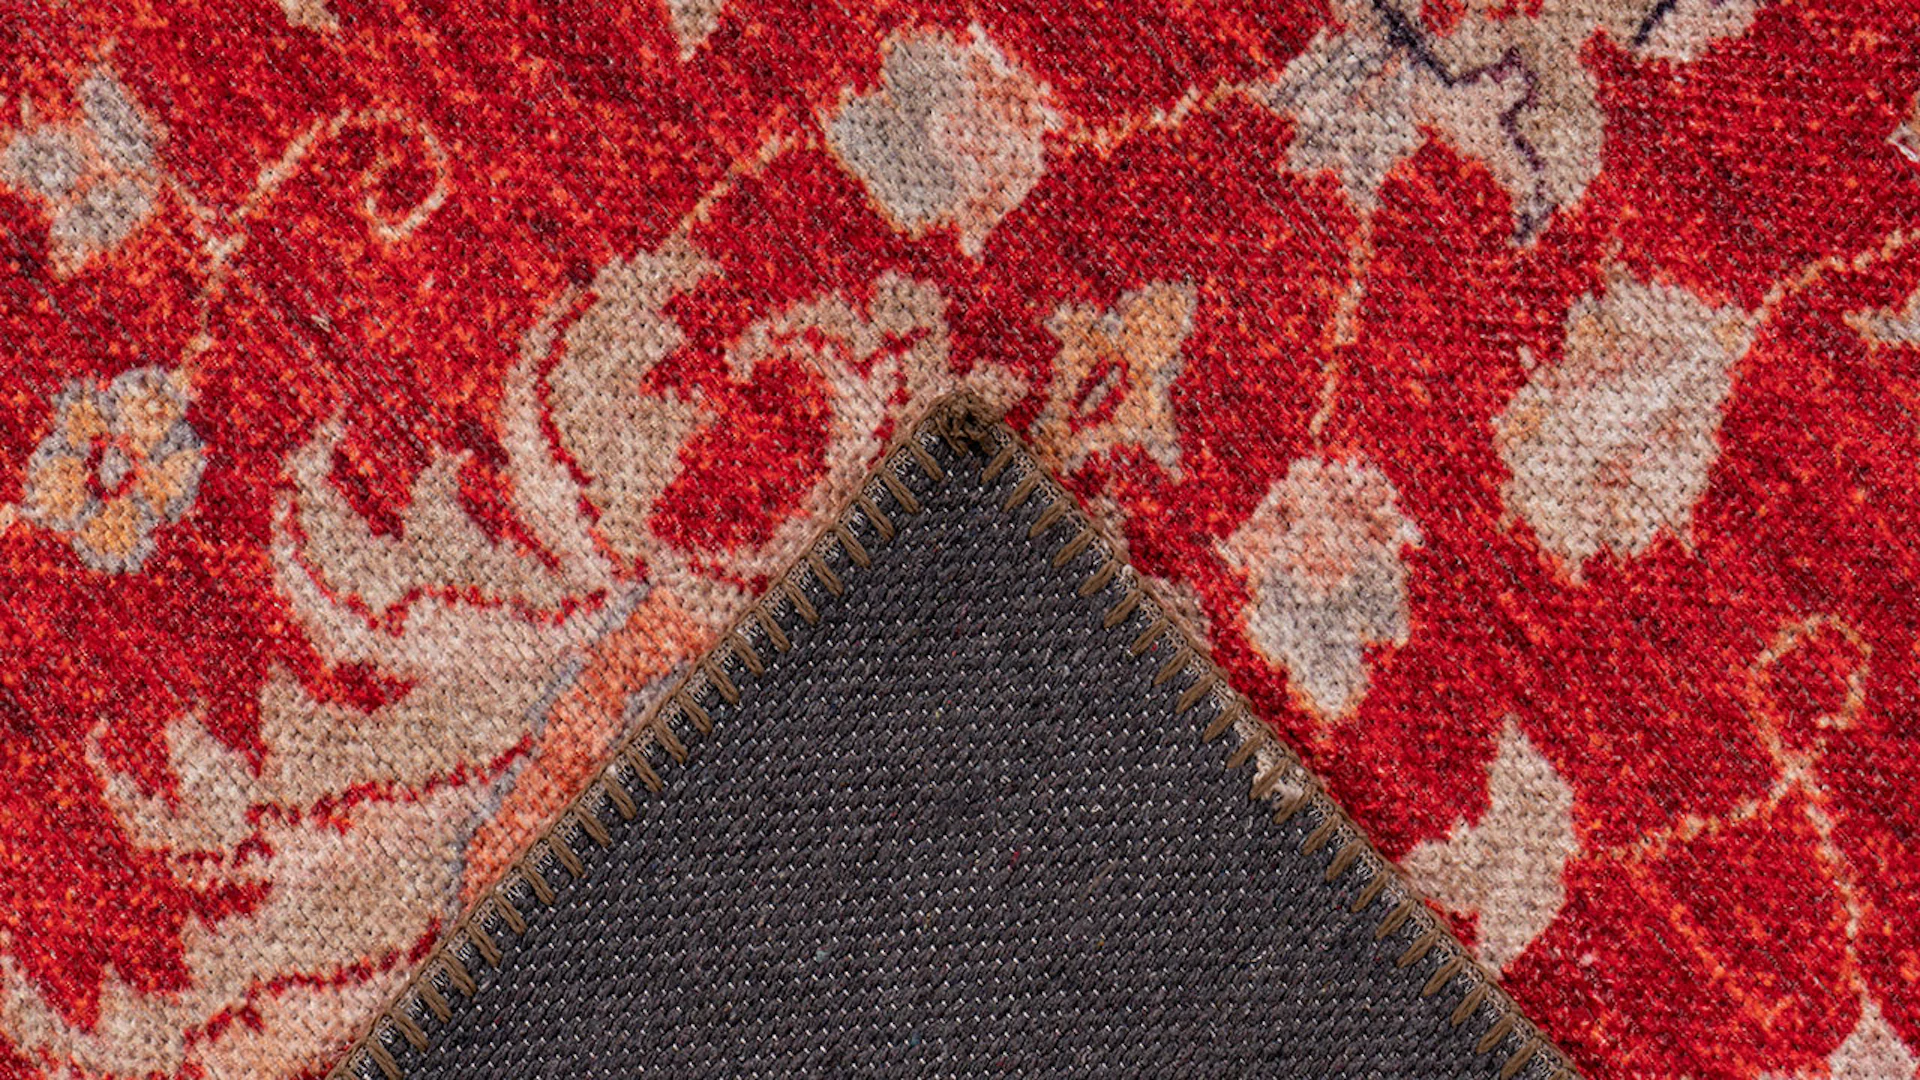 planeo carpet - Faye 625 red 75 x 150 cm